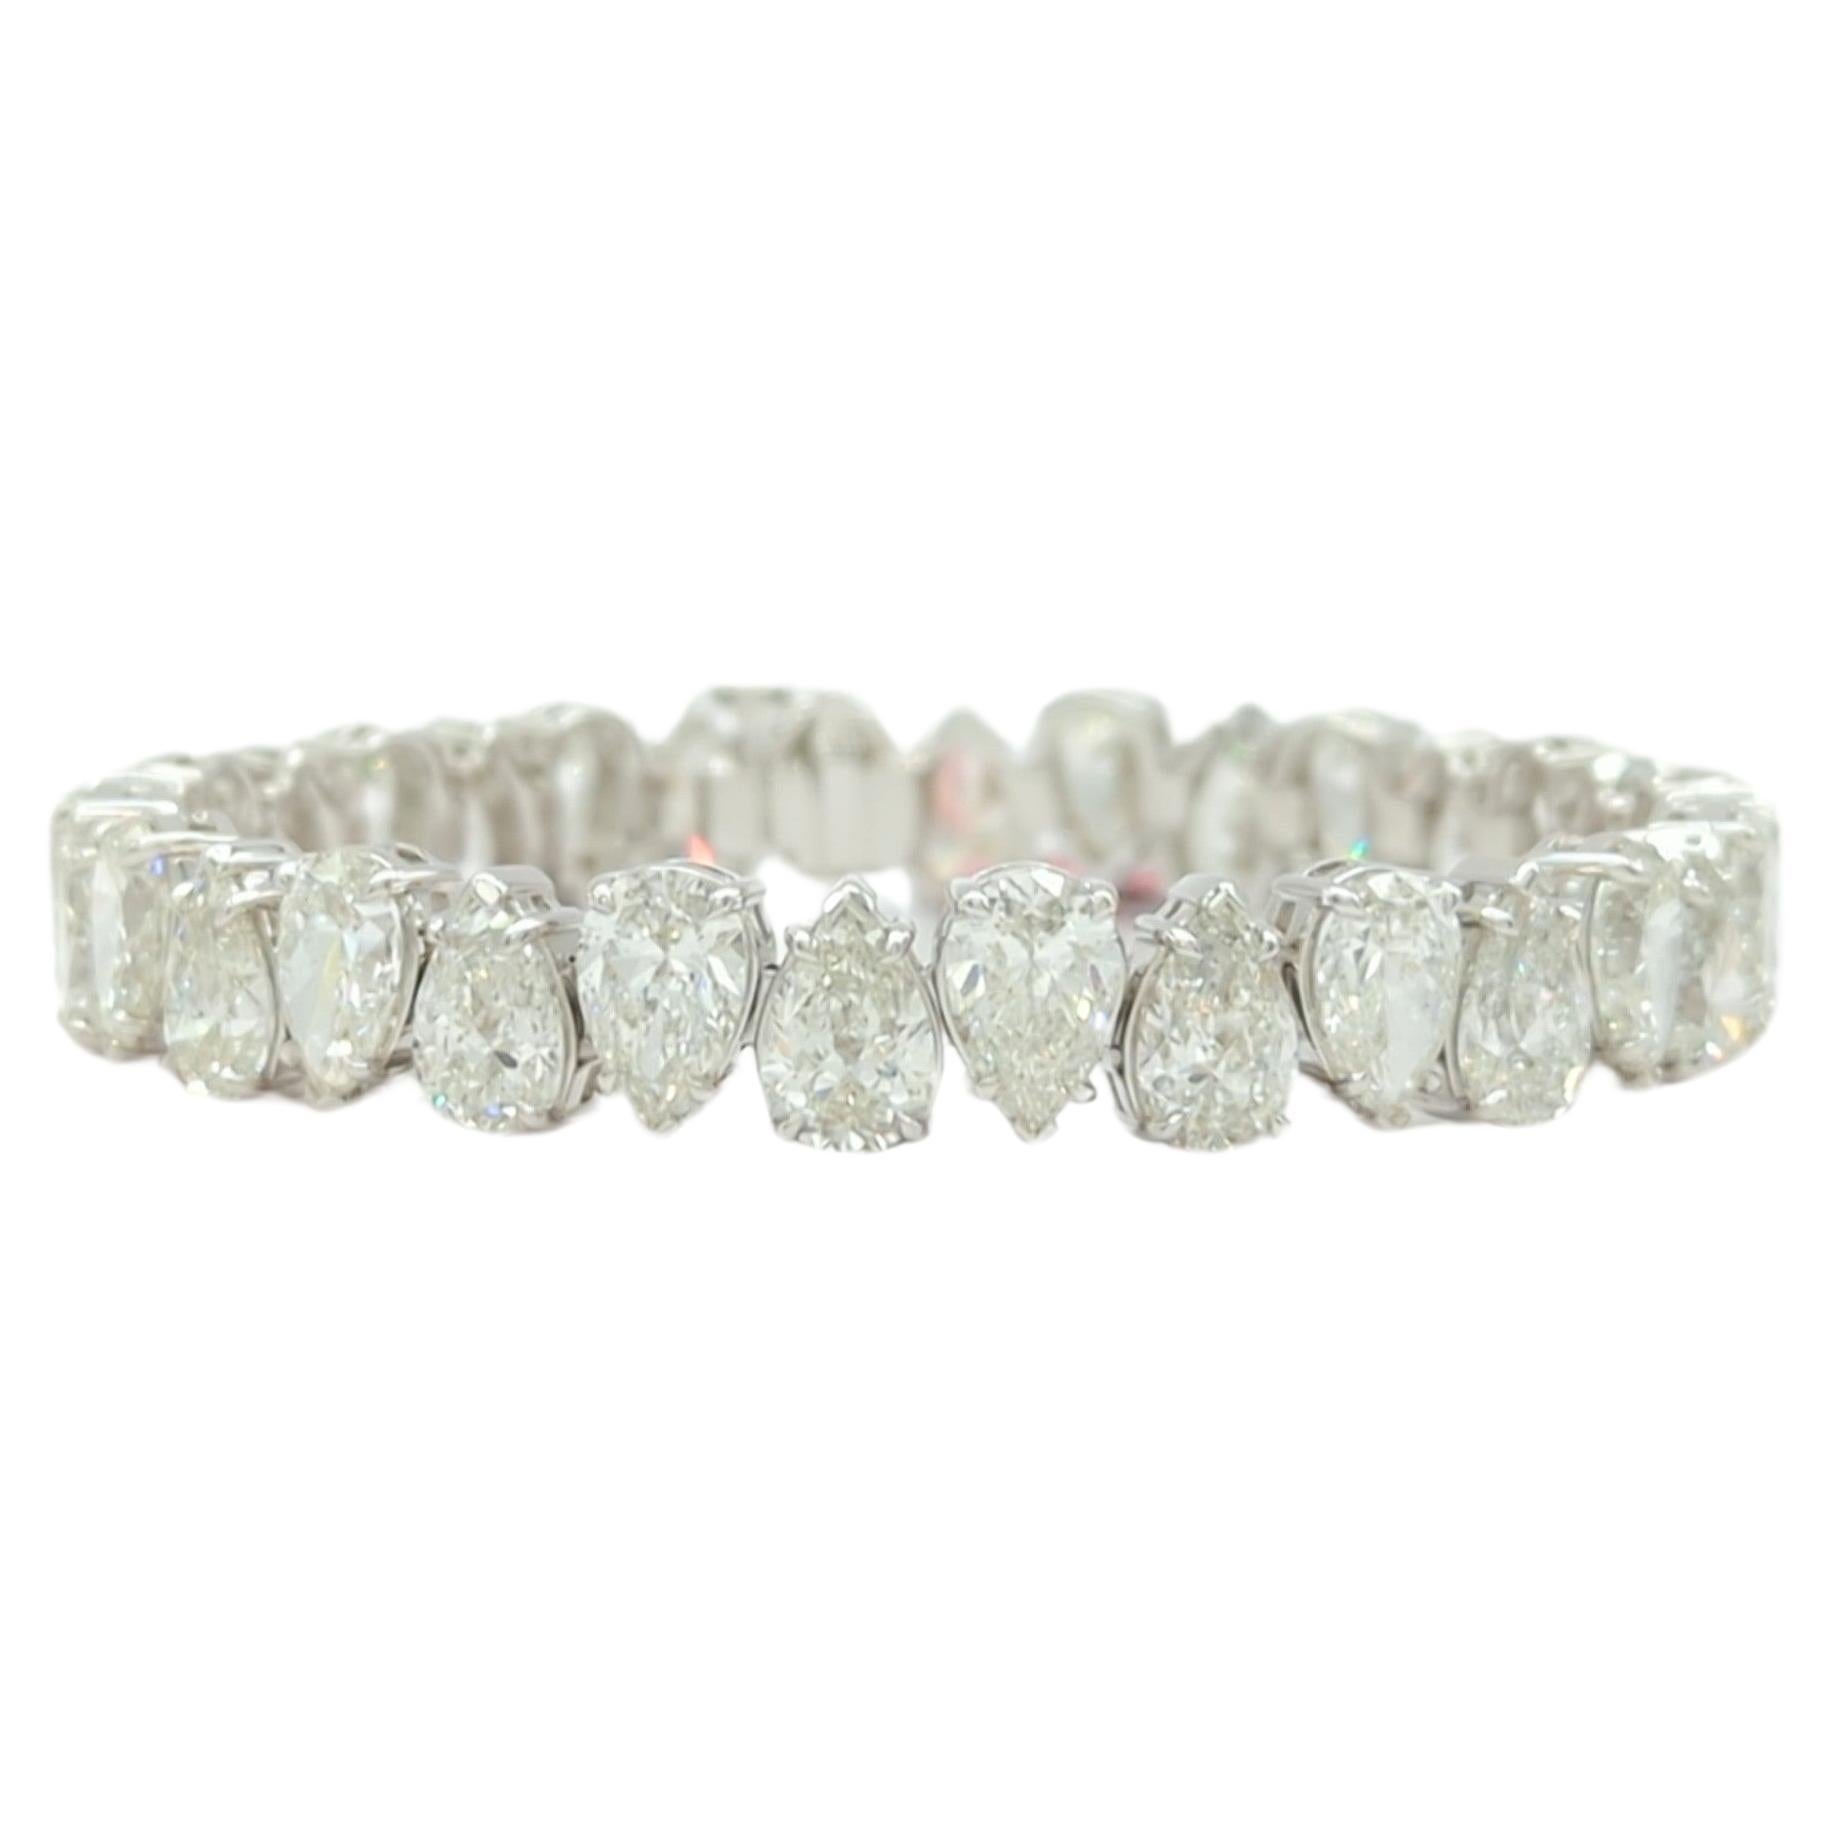 Bracelet tennis en or blanc 18 carats avec diamants blancs en forme de poire de 1 carat chacun, certifiés GIA